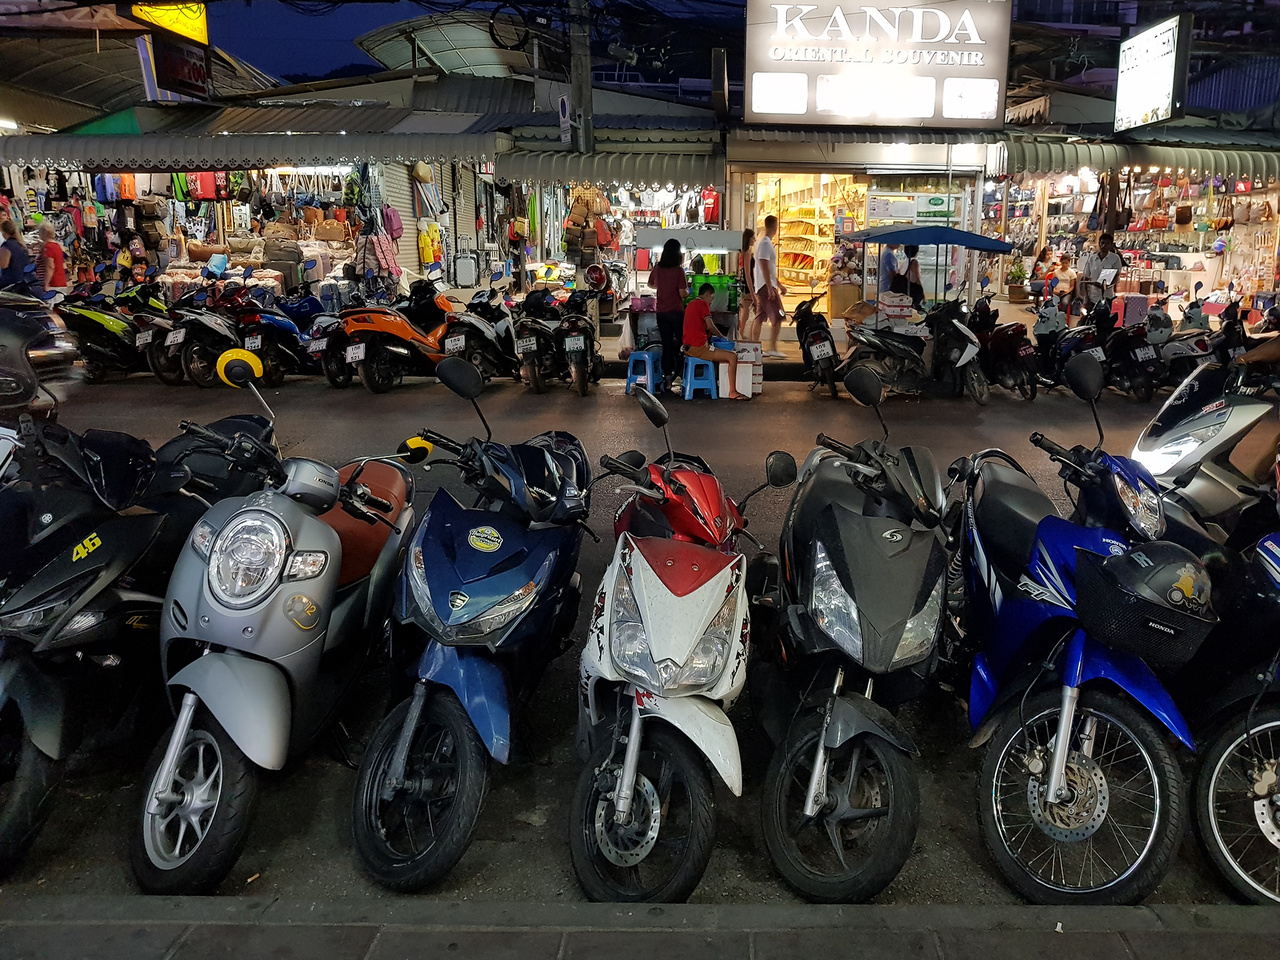 Thaiföld a maga közel hetvenmilliós népességével, mesés természeti csodáival a világ turizmusában kiemelkedő szerepet játszik. A közlekedés az Ázsiában megszokott kissé kaotikus módon, ráadásul a bal oldalon zajlik, főszerepben a robogókkal. Bár nincs annyi belőlük, mint Vietnámban, ahol kb. negyvenmillió(!) motorkerékpárt tartanak nyilván, itt is a legfontosabb közlekedési eszköz egész családok számára. Az elmúlt években folyamatosan 1,6-2 millió db között mozog az értékesített új robogók száma, ehhez képest 7-800 ezer új autó talál gazdára